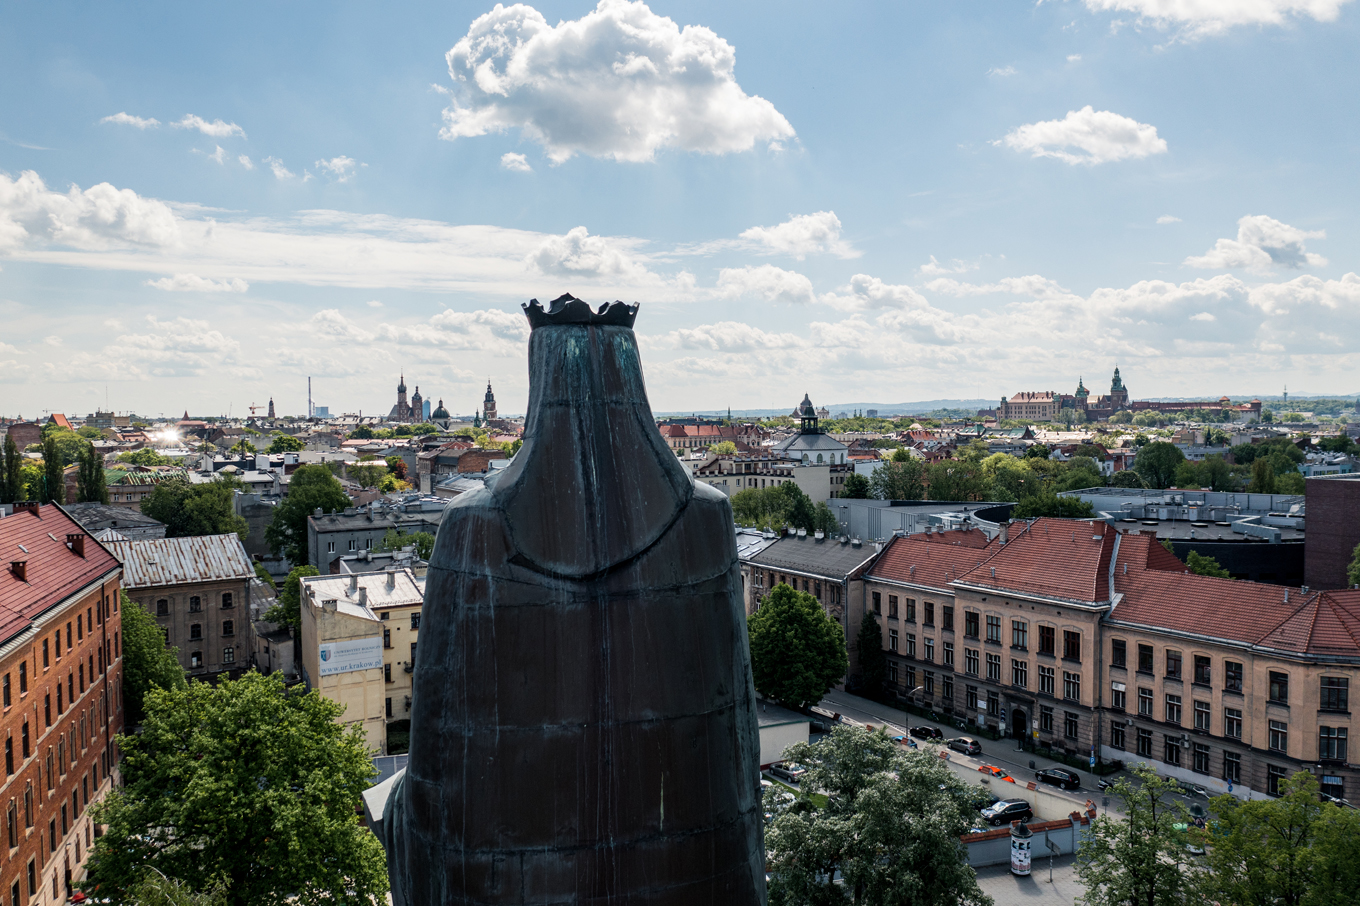 Pomnik Św Barbary spoglądający na panoramę Krakowa. W tle widać stare kamieniczki. Po prawej Wawel. Po lewej Kościół Mariacki.